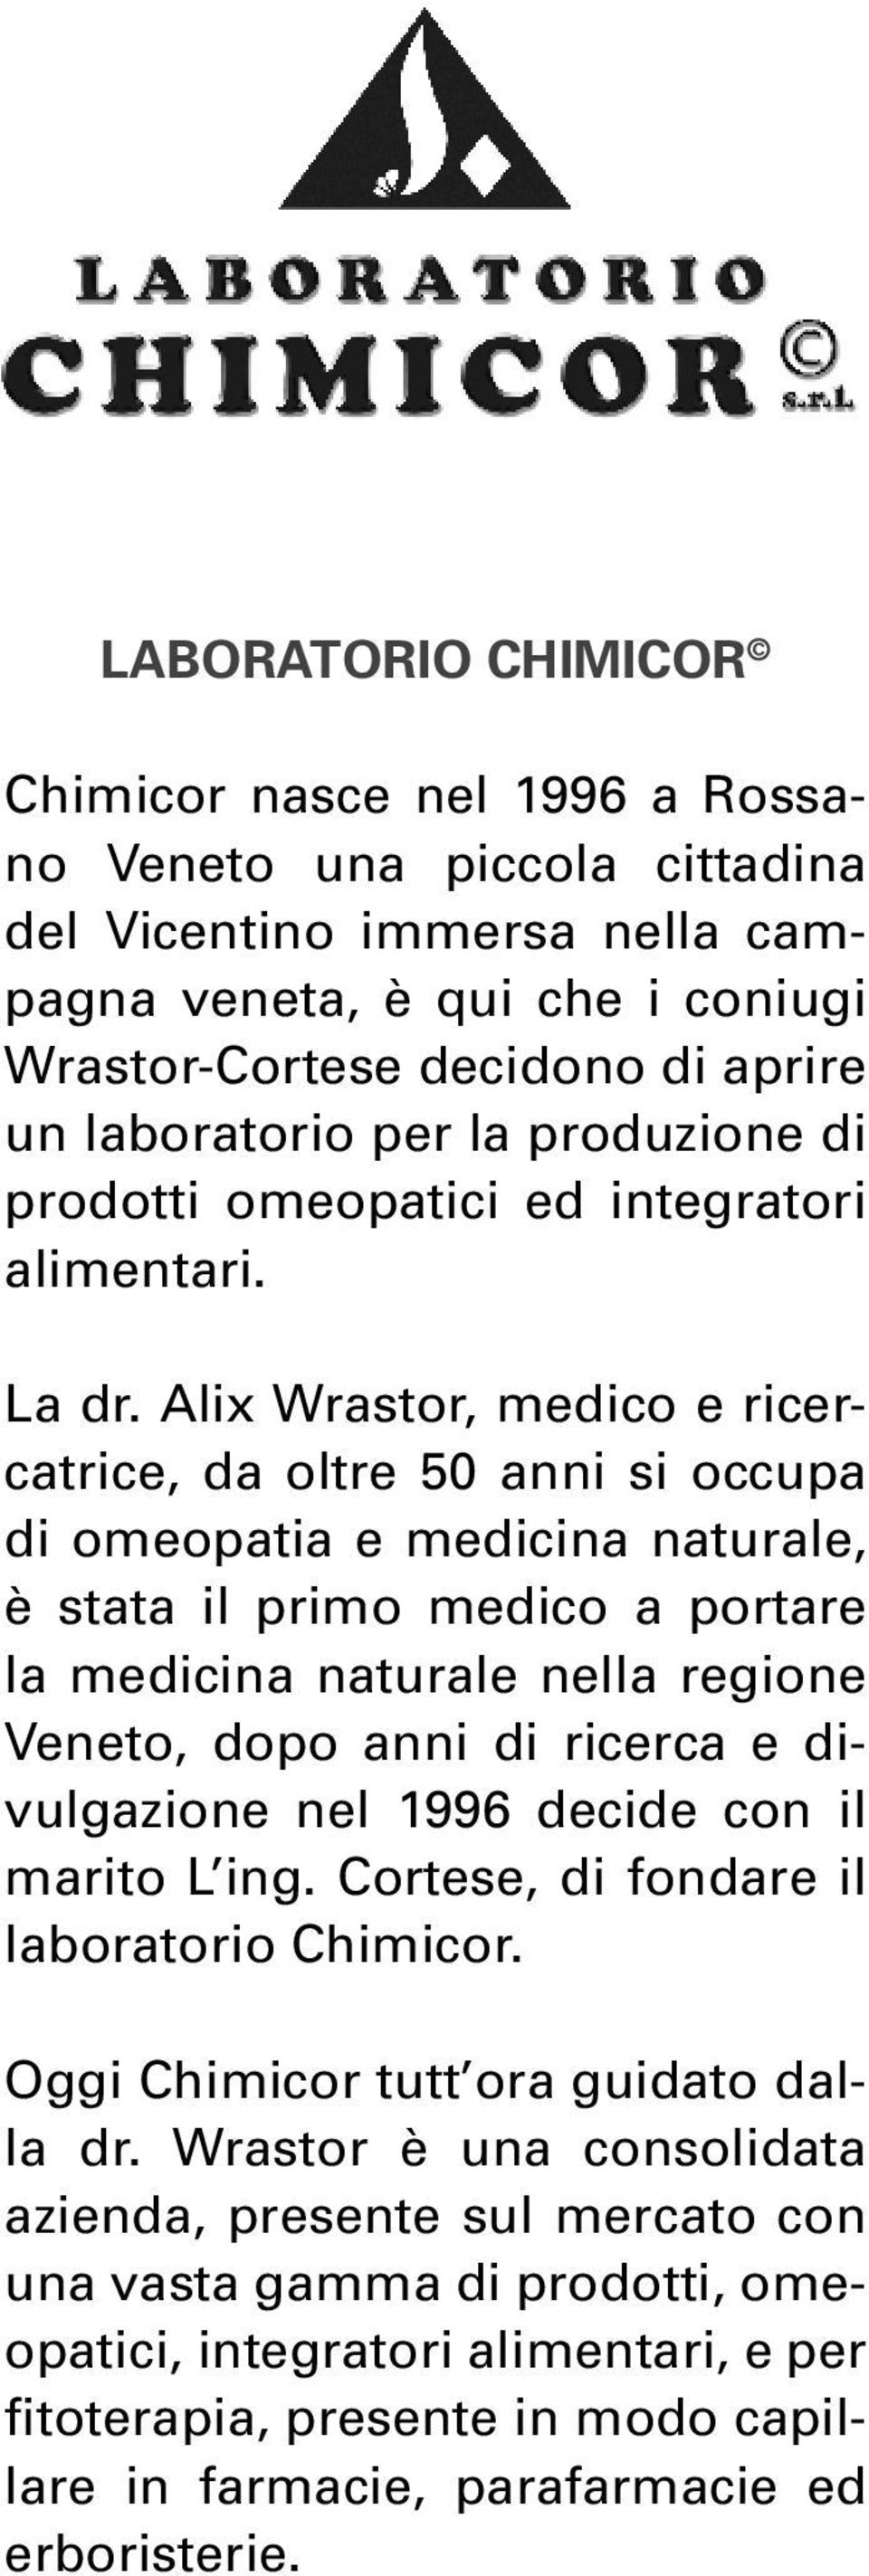 Alix Wrastor, medico e ricercatrice, da oltre 50 anni si occupa di omeopatia e medicina naturale, è stata il primo medico a portare la medicina naturale nella regione Veneto, dopo anni di ricerca e